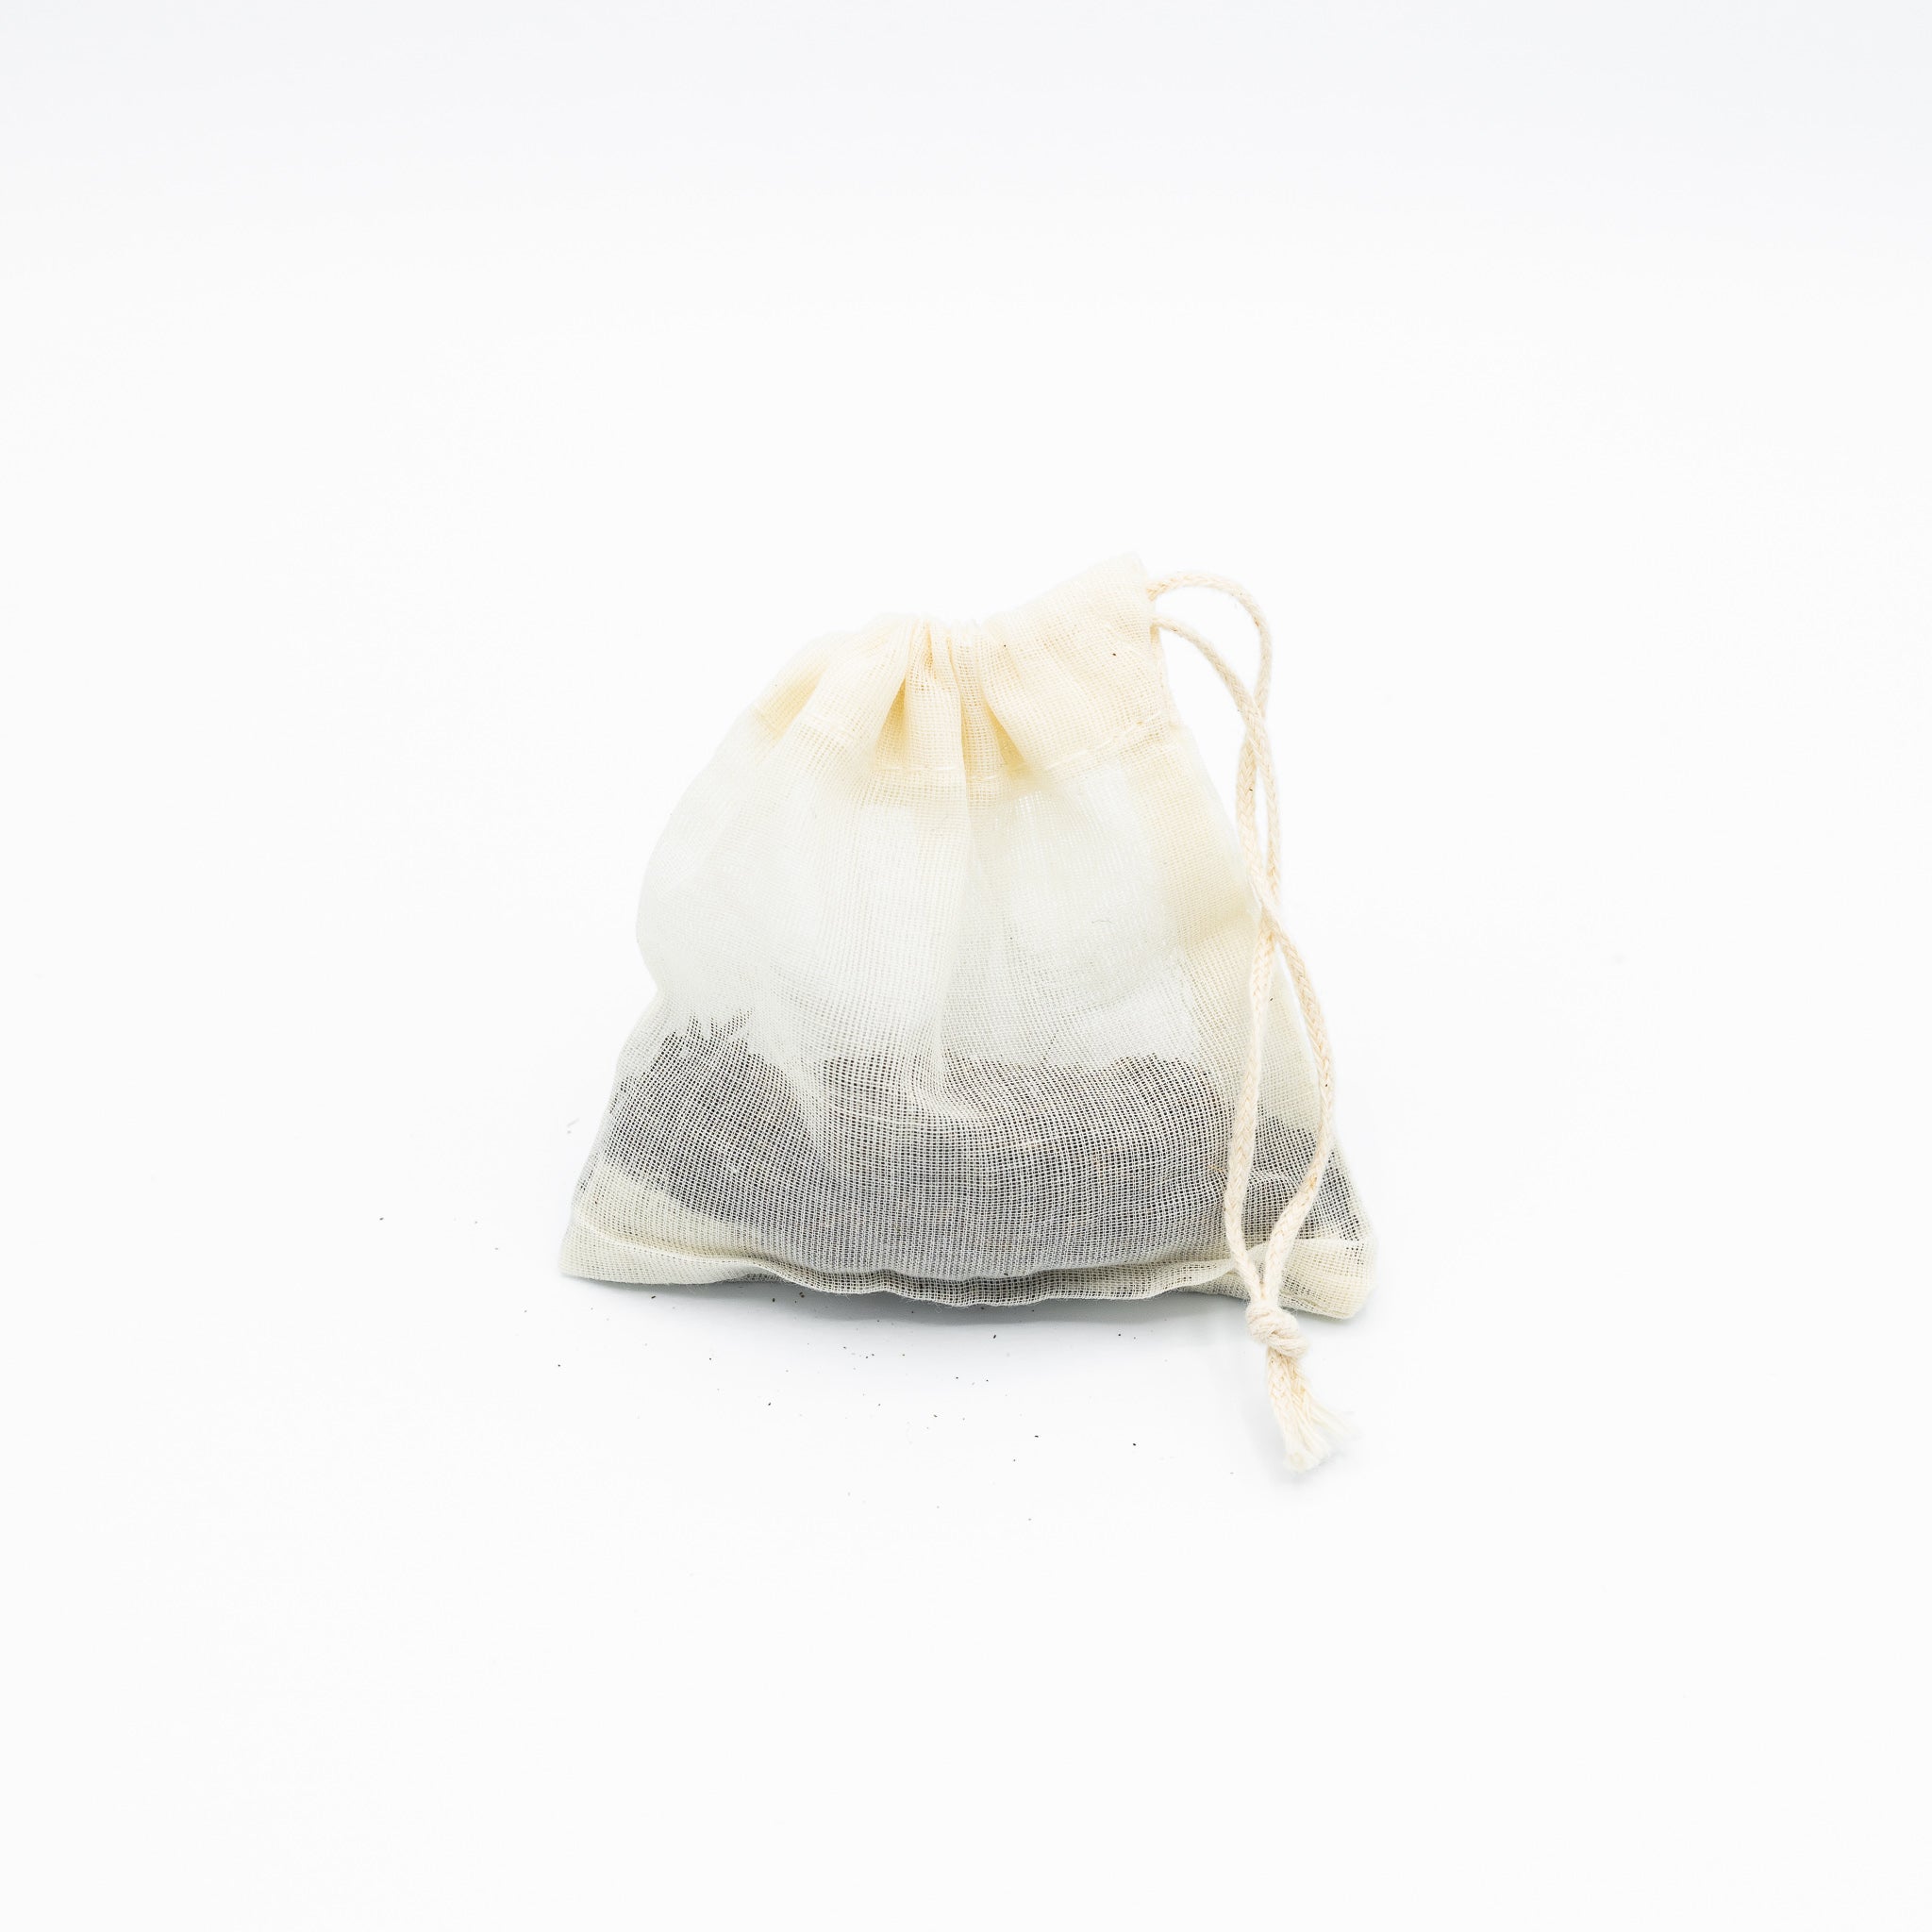 Sachet de thé réutilisable en mousseline de coton biologique. E shop.